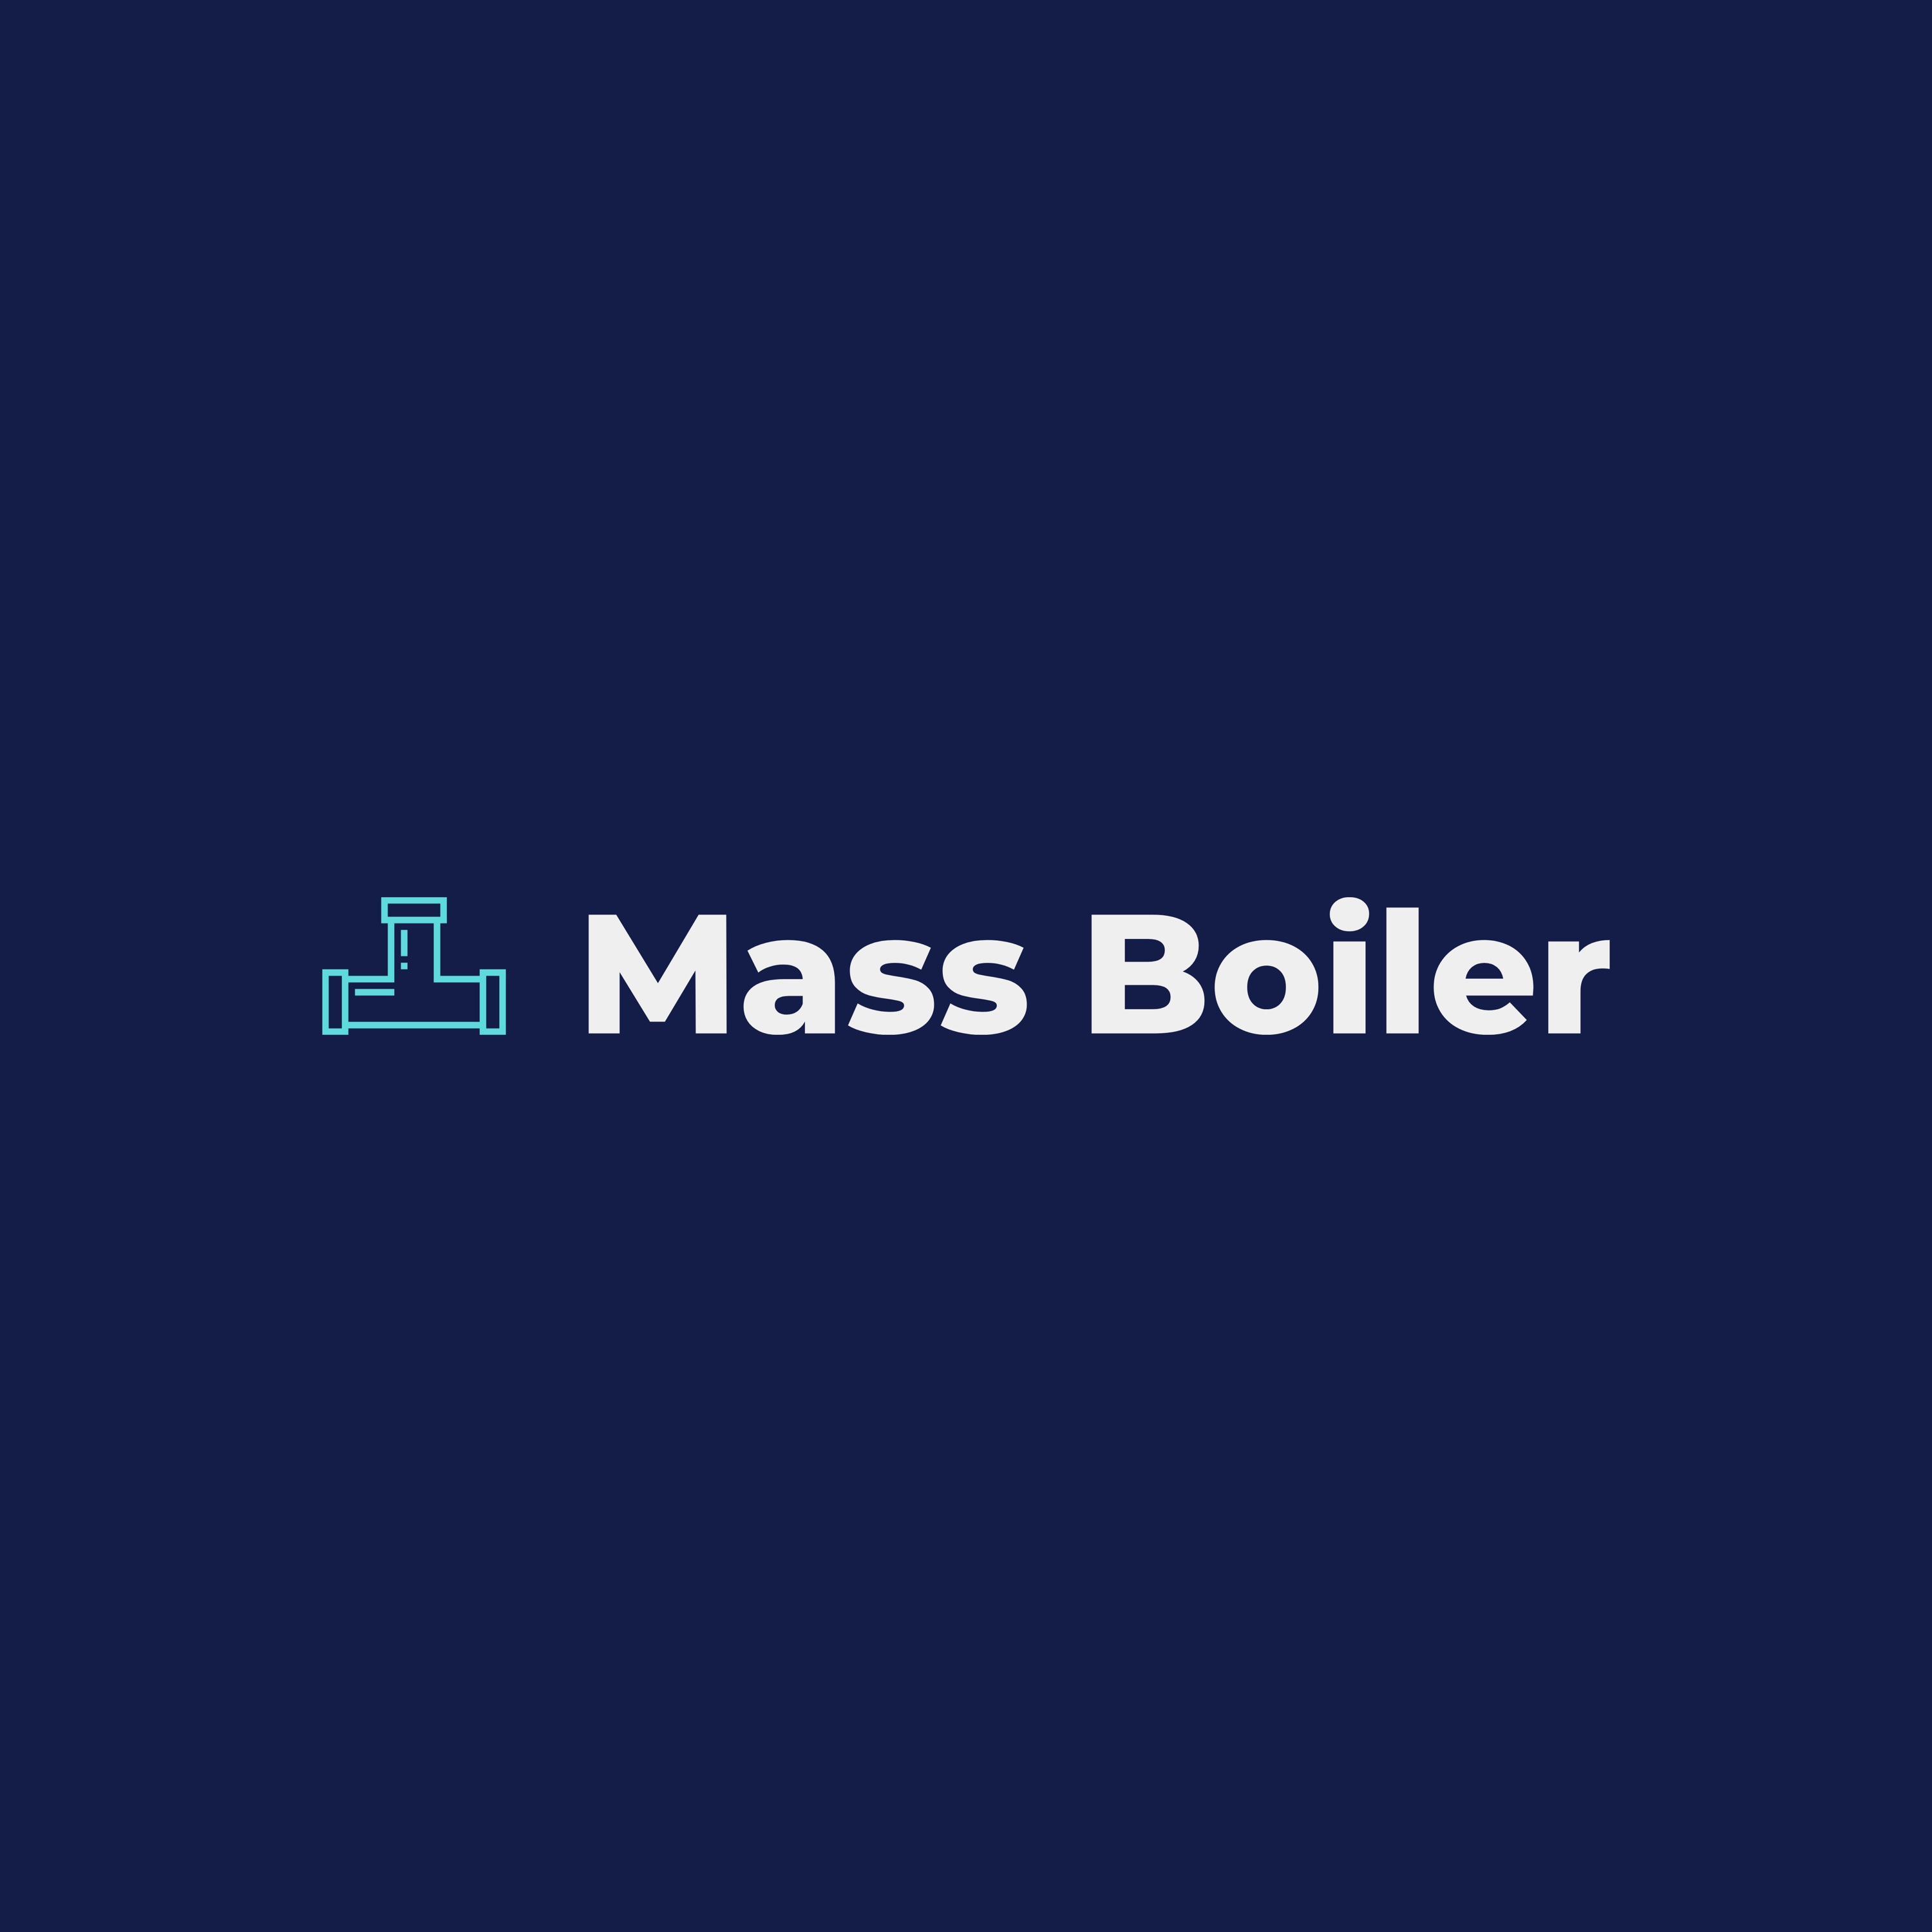 Massachusetts Boiler Company Logo